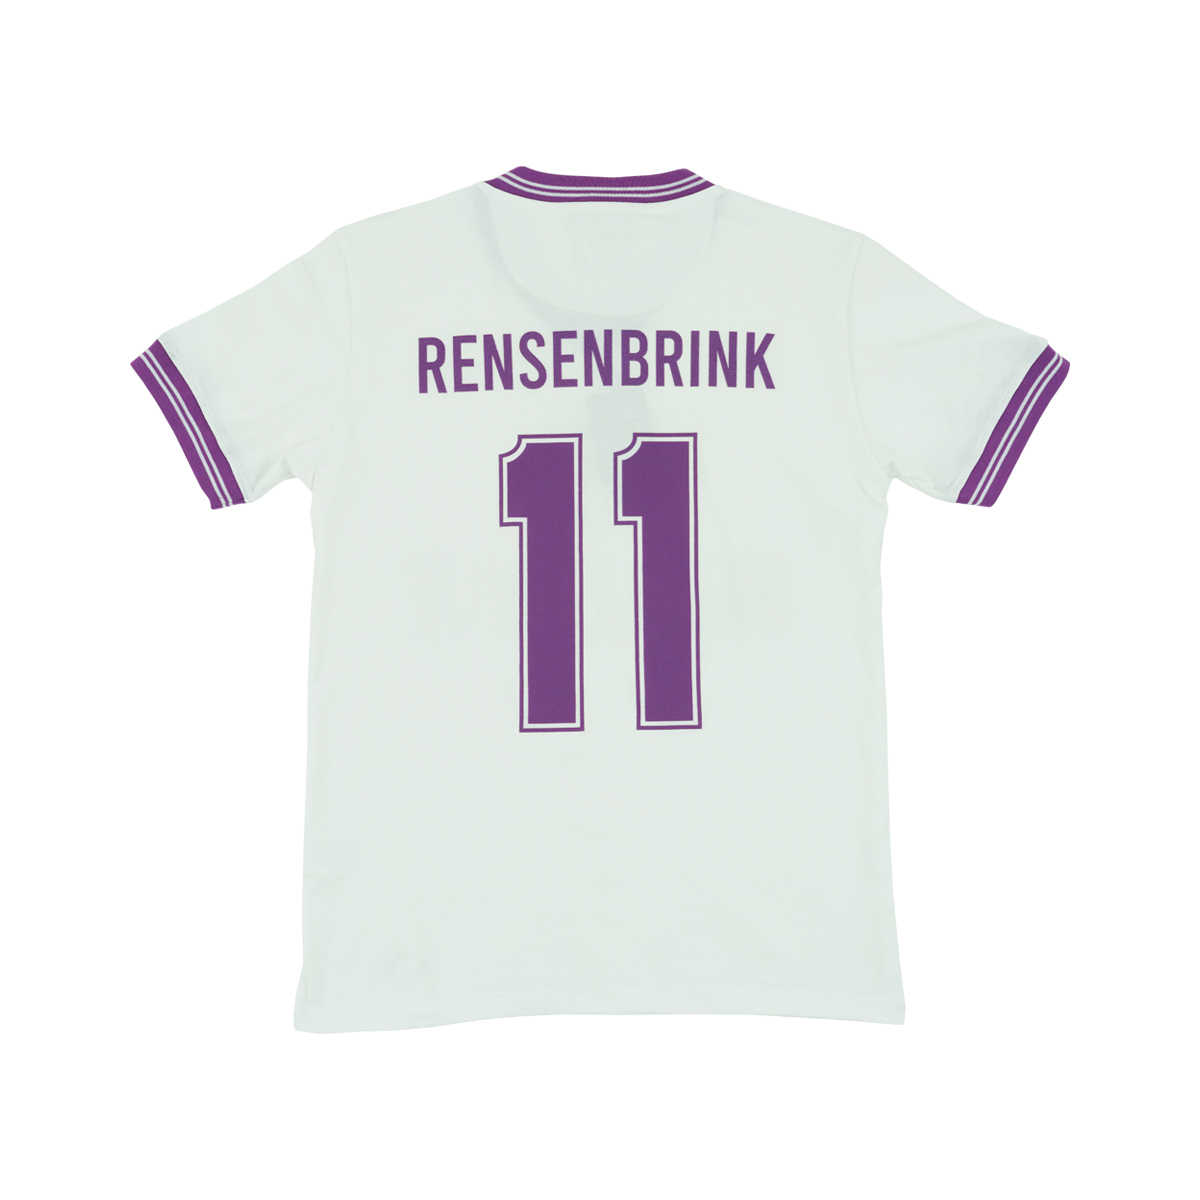 Limited Edition Retro Shirt Rensenbrink